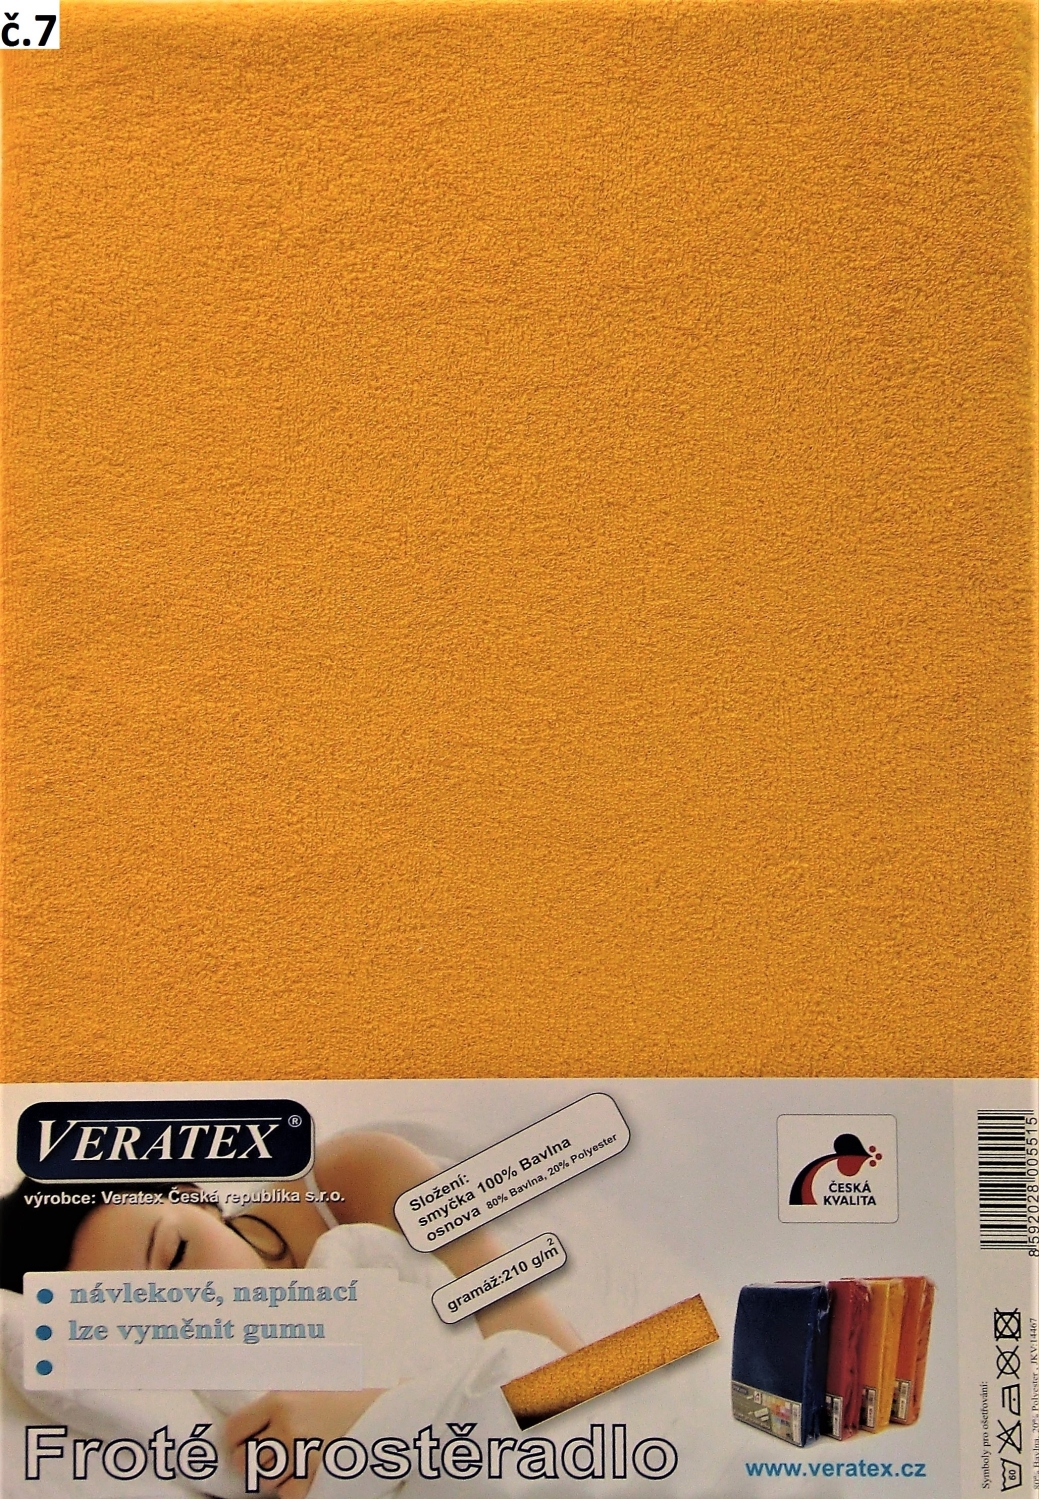 Veratex Froté prostěradlo jednolůžko 90x200/25cm (č. 7-sytě žluté)